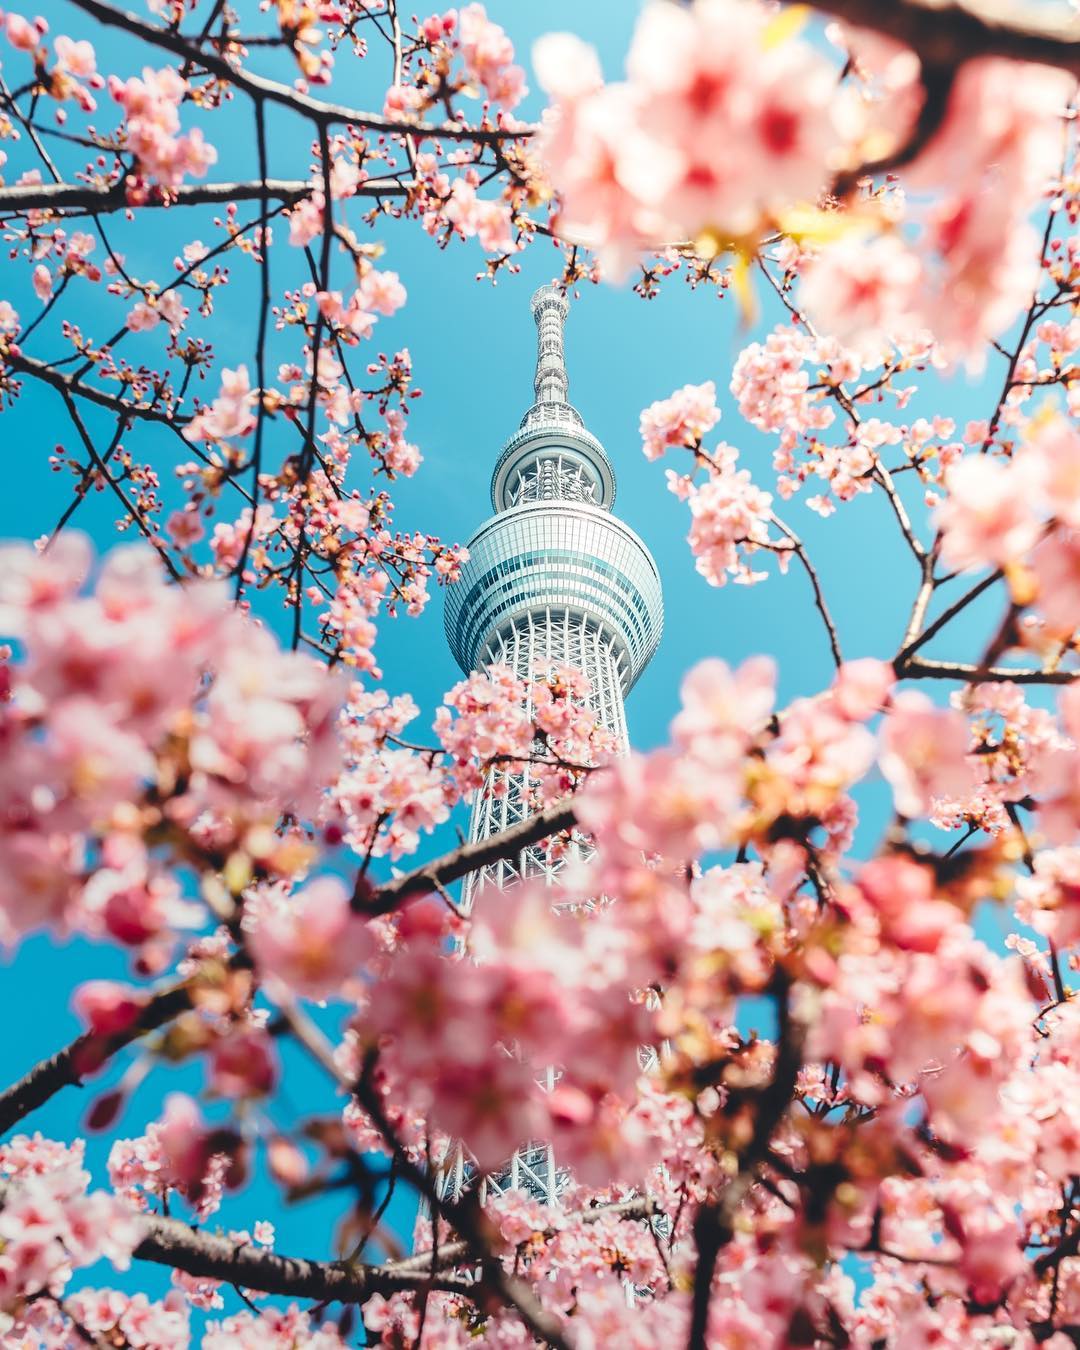 日本晴空塔配上櫻花盛開絕美風景